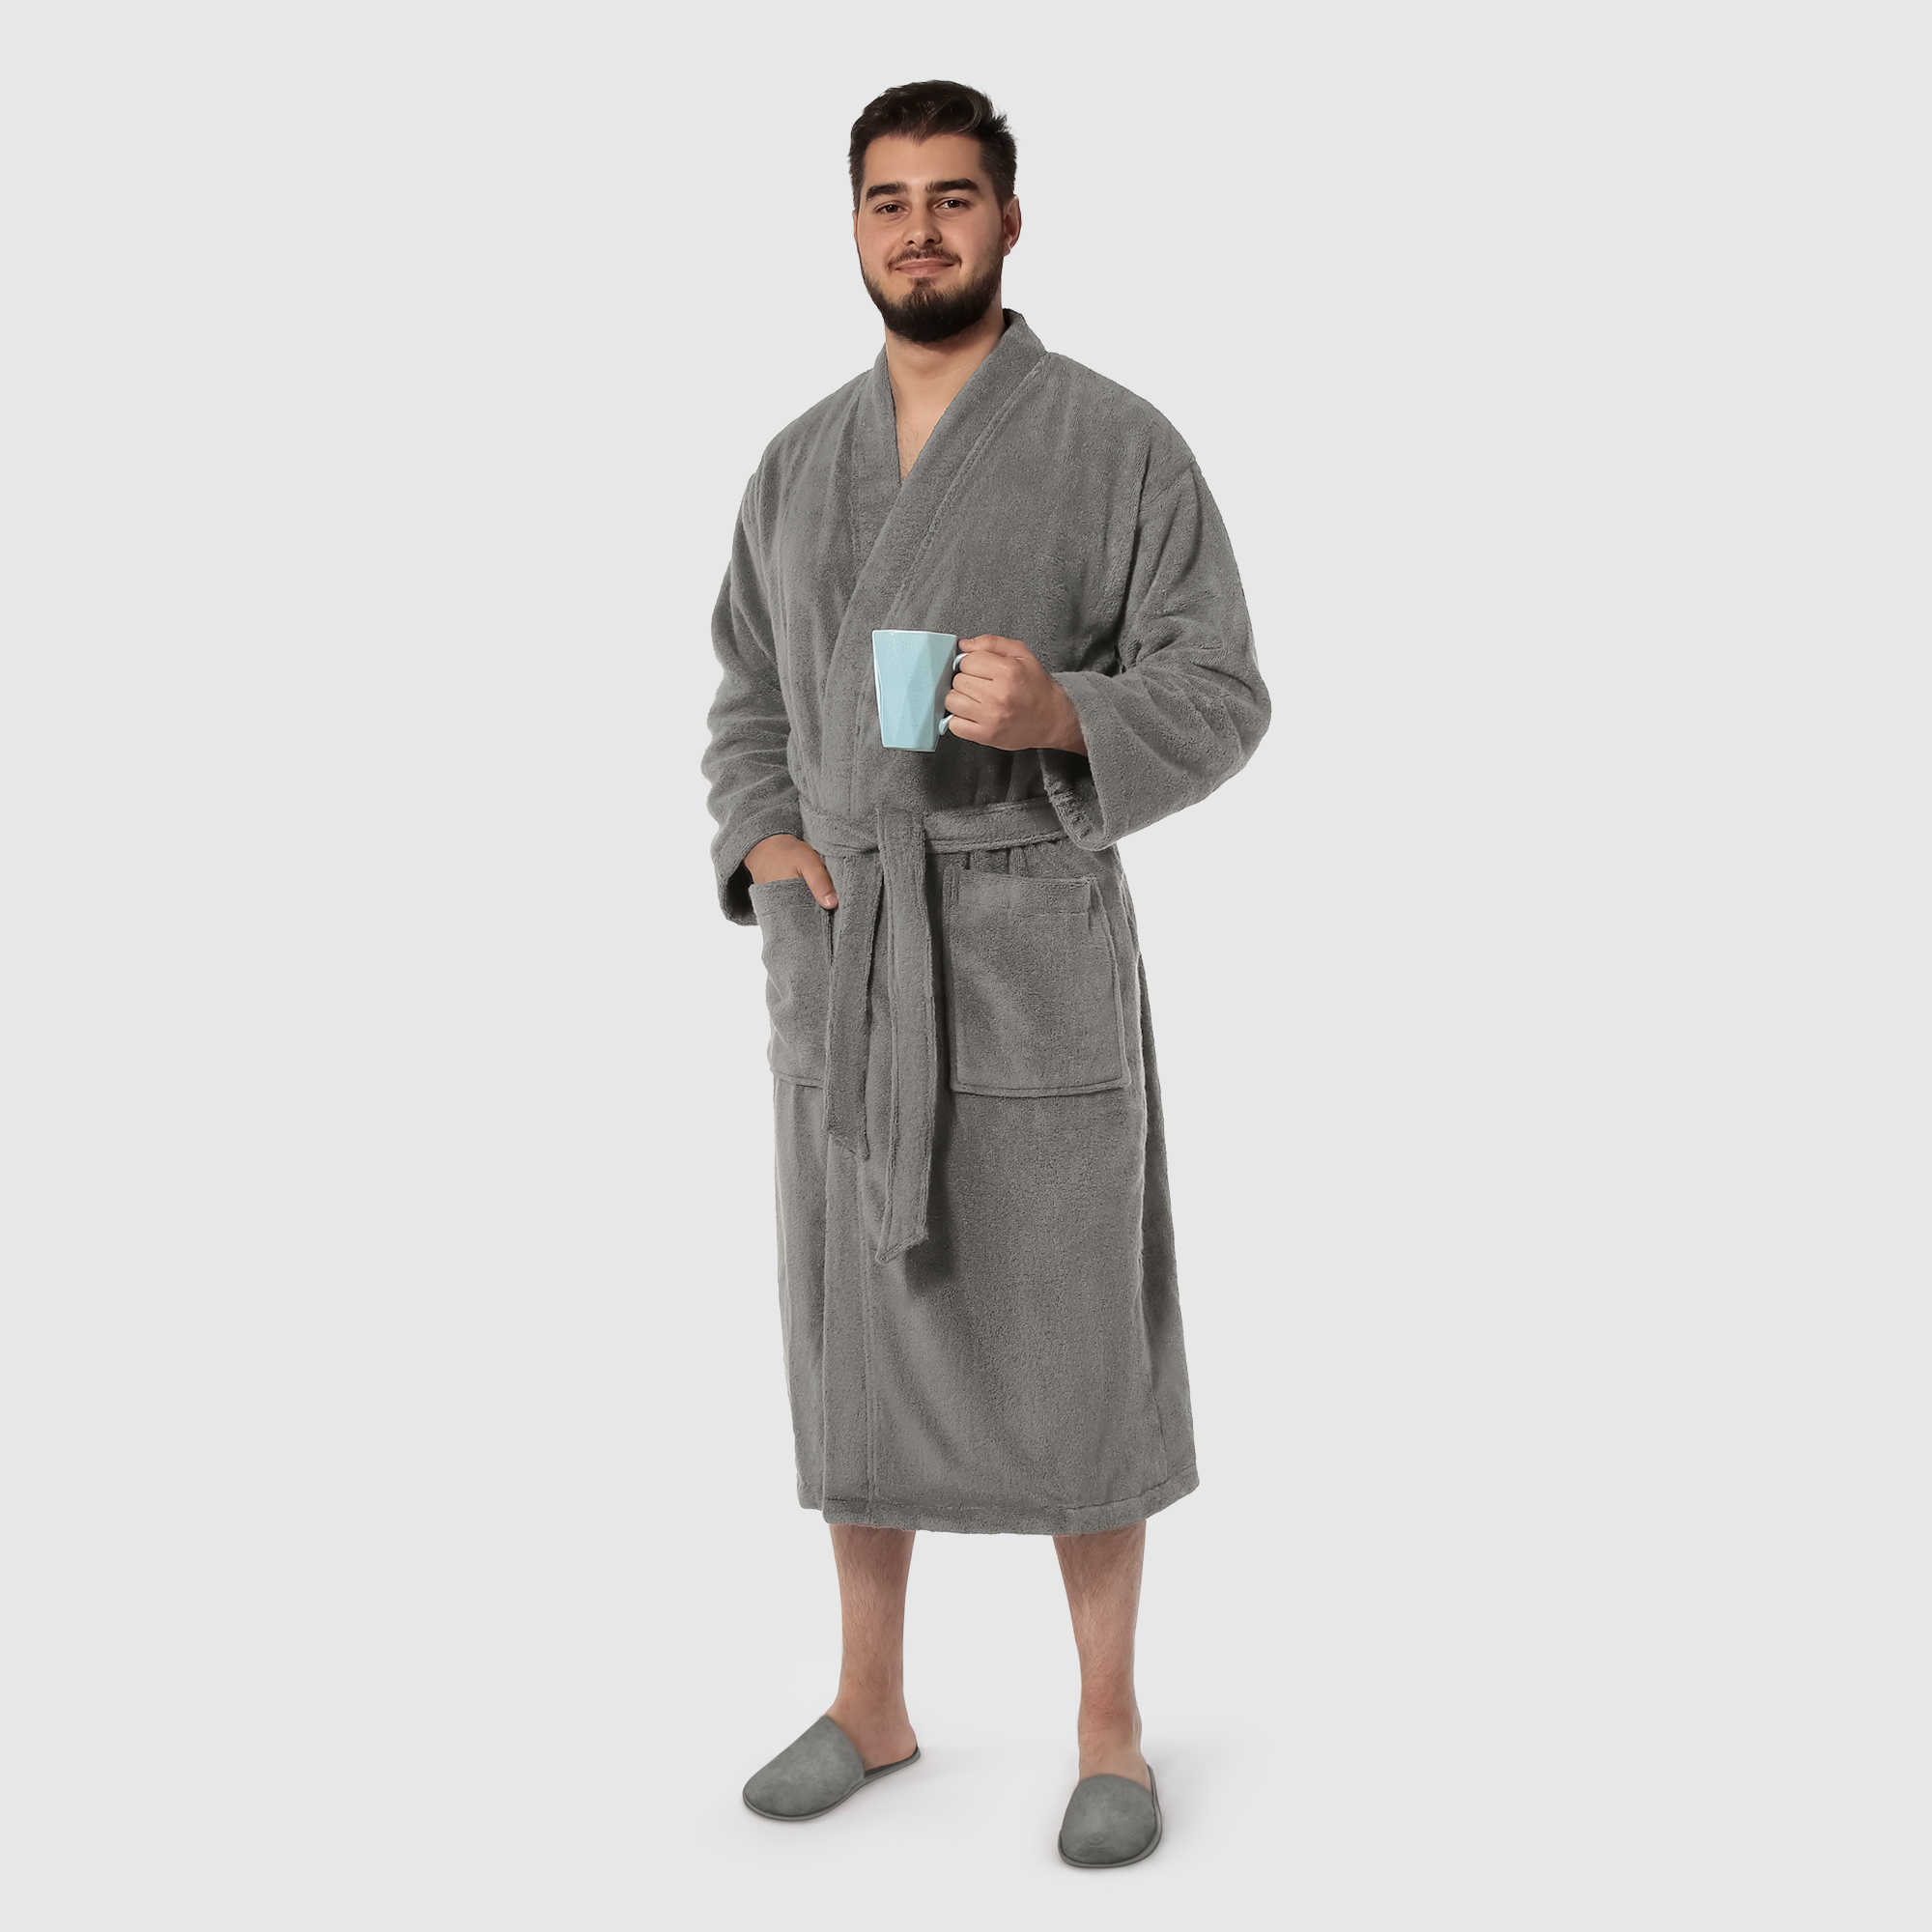 Мужской халат Maisonette Parla светло-серый M халат мужской asil sauna brown xl вафельный с капюшоном